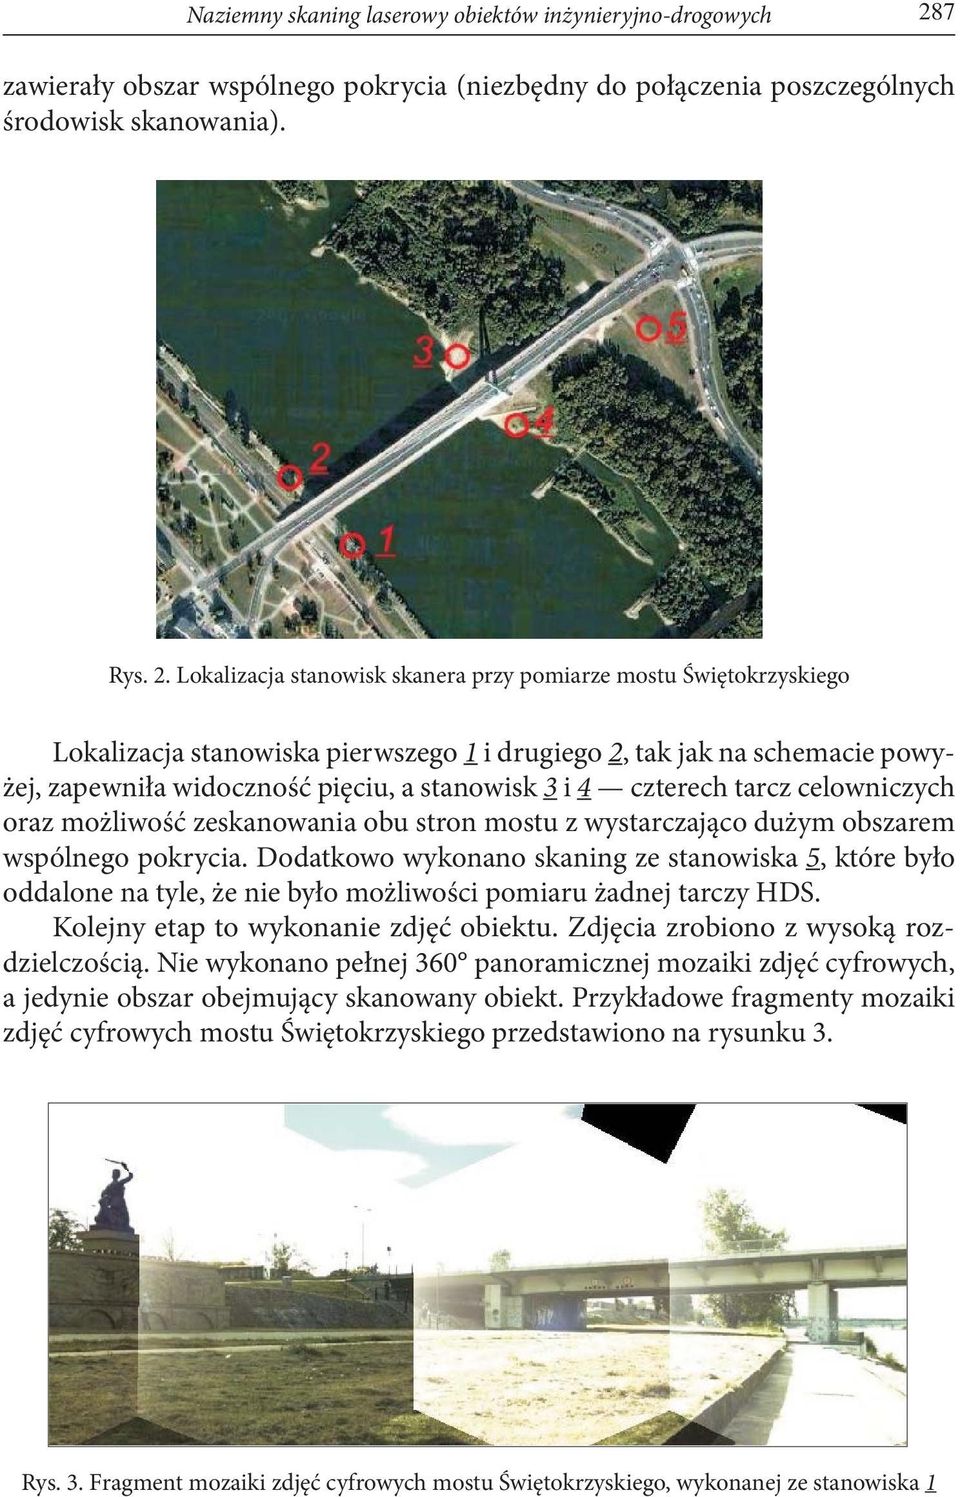 Lokalizacja stanowisk skanera przy pomiarze mostu Świętokrzyskiego Lokalizacja stanowiska pierwszego 1 i drugiego 2, tak jak na schemacie powyżej, zapewniła widoczność pięciu, a stanowisk 3 i 4